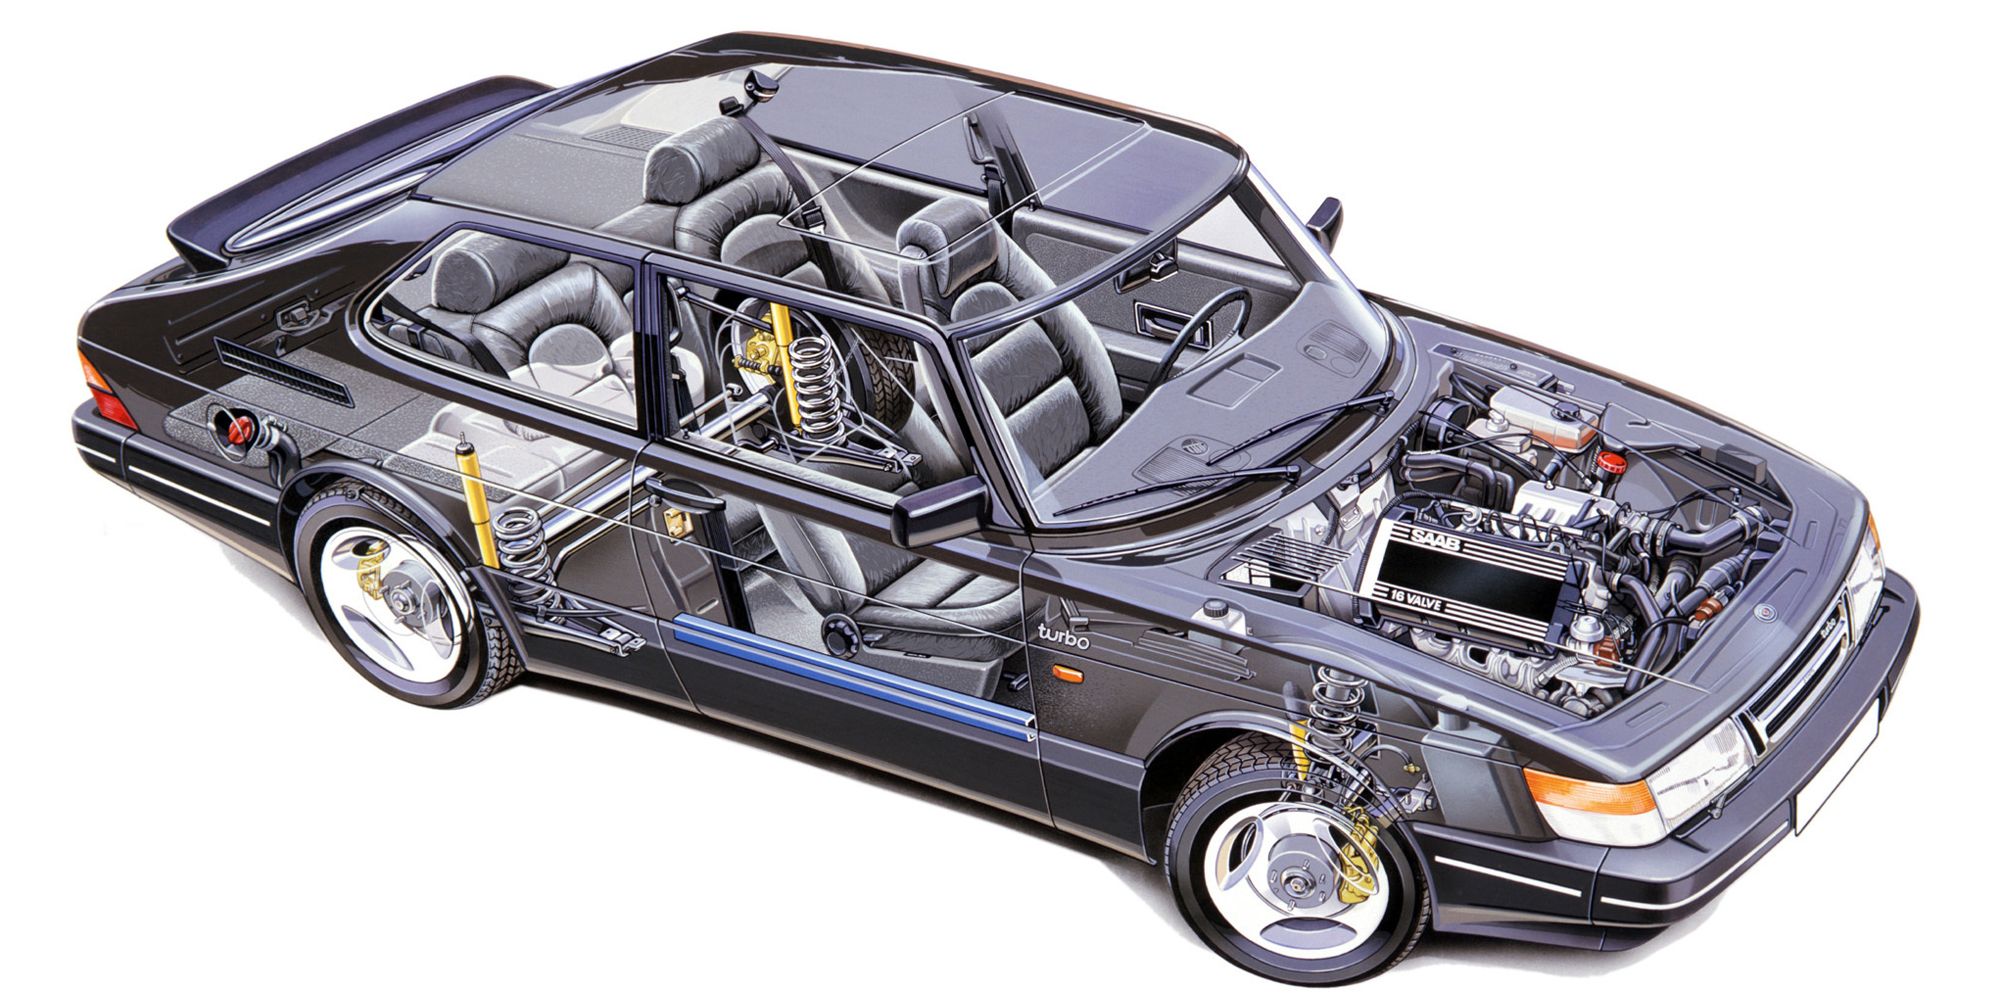 A cutaway of the Saab 900's drivetrain components